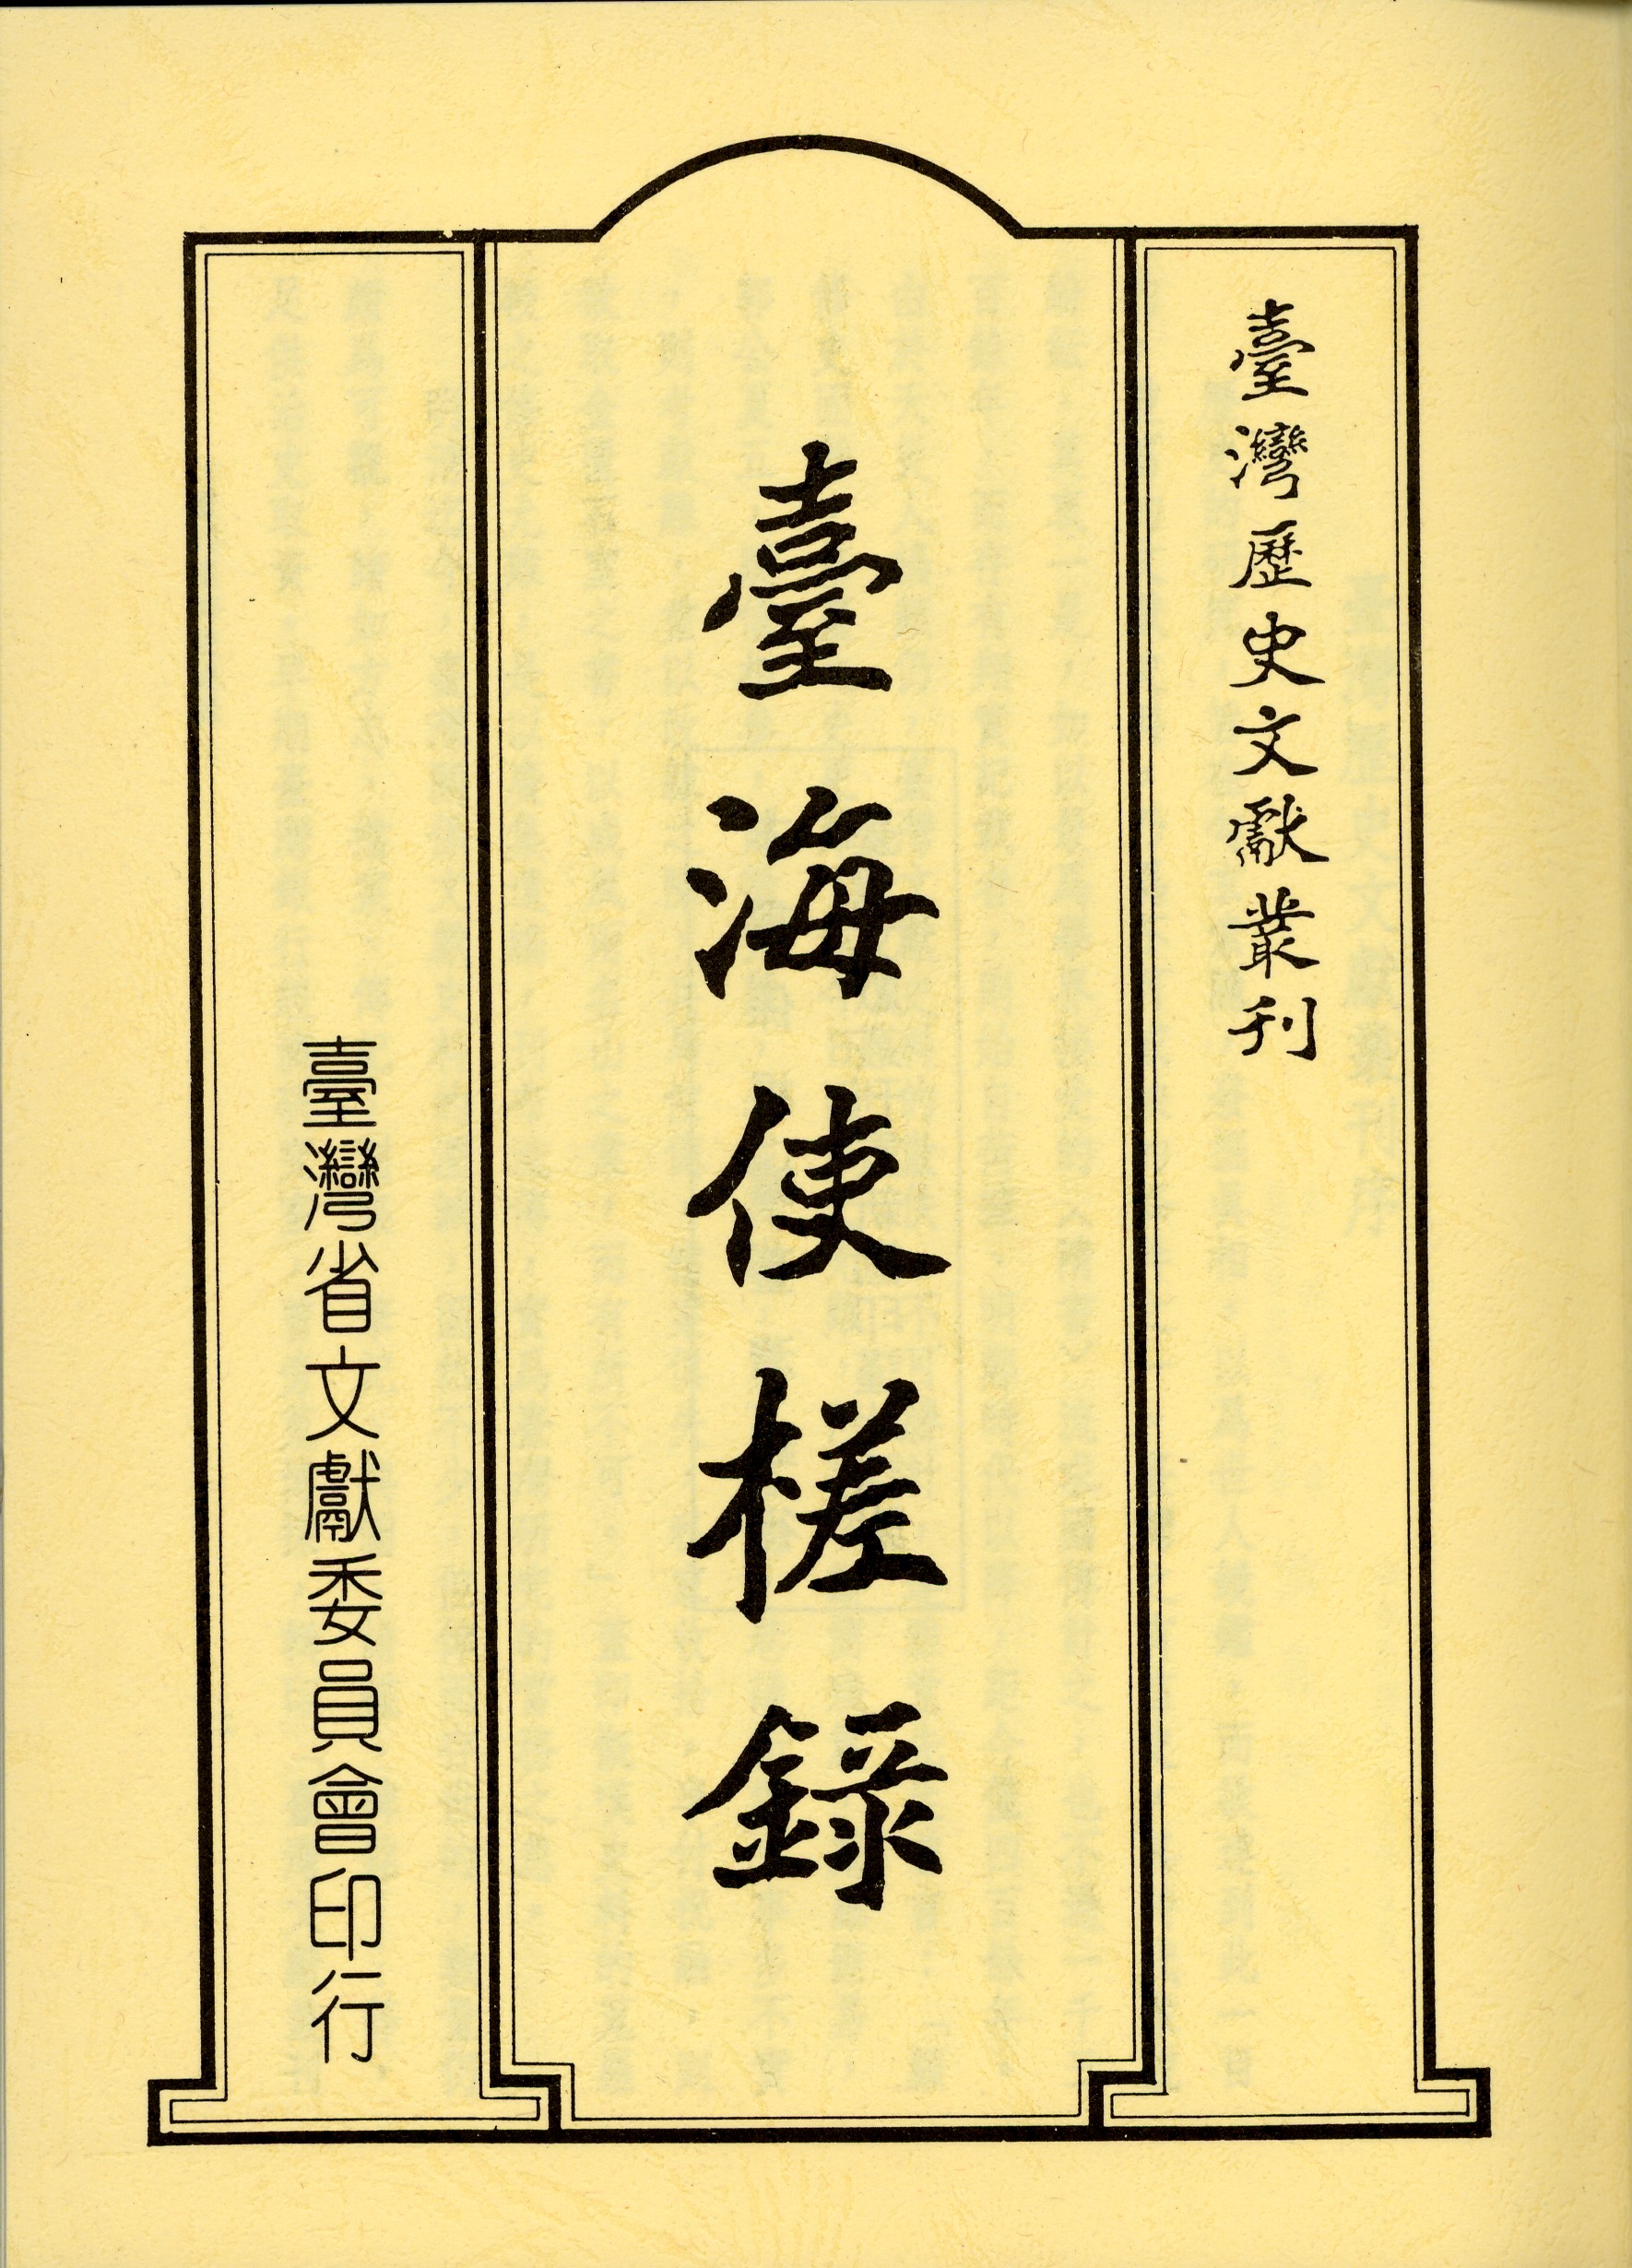 黃叔璥: 臺海使槎錄 (Classical Chinese language, 1996, 臺灣省文獻委員會)